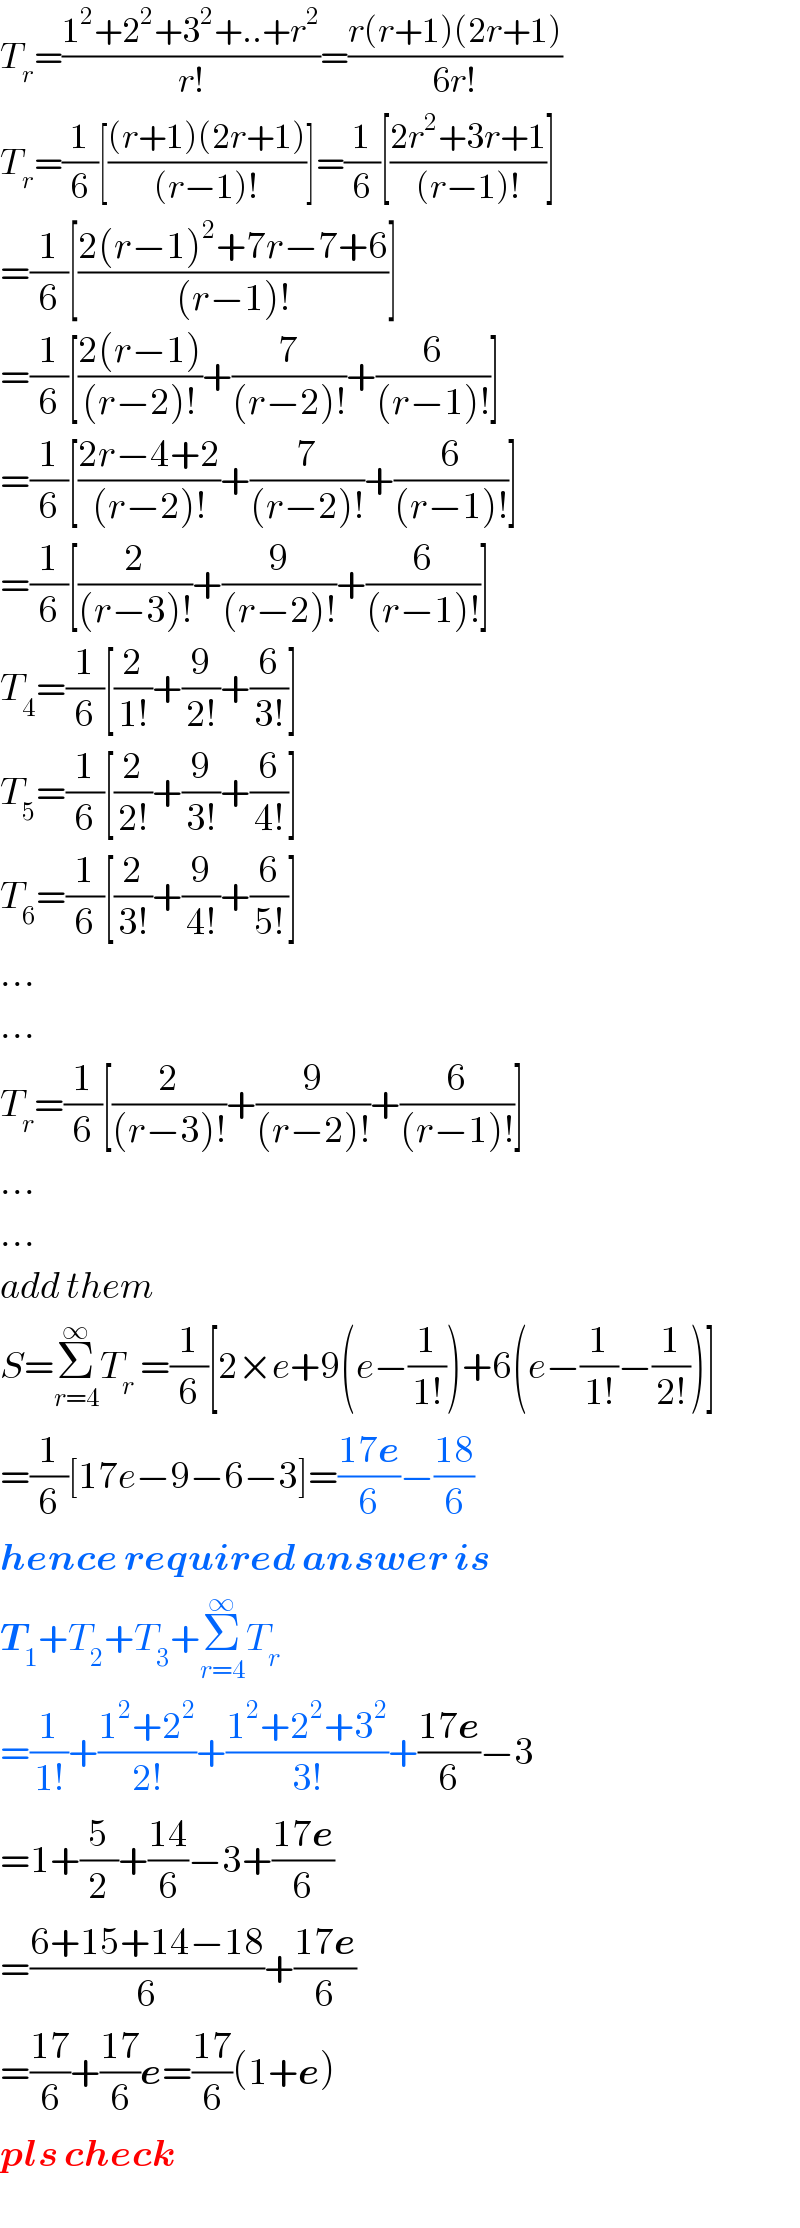 T_r =((1^2 +2^2 +3^2 +..+r^2 )/(r!))=((r(r+1)(2r+1))/(6r!))  T_r =(1/6)[(((r+1)(2r+1))/((r−1)!))]=(1/6)[((2r^2 +3r+1)/((r−1)!))]  =(1/6)[((2(r−1)^2 +7r−7+6)/((r−1)!))]  =(1/6)[((2(r−1))/((r−2)!))+(7/((r−2)!))+(6/((r−1)!))]  =(1/6)[((2r−4+2)/((r−2)!))+(7/((r−2)!))+(6/((r−1)!))]  =(1/6)[(2/((r−3)!))+(9/((r−2)!))+(6/((r−1)!))]  T_4 =(1/6)[(2/(1!))+(9/(2!))+(6/(3!))]  T_5 =(1/6)[(2/(2!))+(9/(3!))+(6/(4!))]  T_6 =(1/6)[(2/(3!))+(9/(4!))+(6/(5!))]  ...  ...  T_r =(1/6)[(2/((r−3)!))+(9/((r−2)!))+(6/((r−1)!))]  ...  ...  add them  S=Σ_(r=4) ^∞ T_r  =(1/6)[2×e+9(e−(1/(1!)))+6(e−(1/(1!))−(1/(2!)))]  =(1/6)[17e−9−6−3]=((17e)/6)−((18)/6)  hence required answer is  T_1 +T_2 +T_3 +Σ_(r=4) ^∞ T_r   =(1/(1!))+((1^2 +2^2 )/(2!))+((1^2 +2^2 +3^2 )/(3!))+((17e)/6)−3  =1+(5/2)+((14)/6)−3+((17e)/6)  =((6+15+14−18)/6)+((17e)/6)  =((17)/6)+((17)/6)e=((17)/6)(1+e)  pls check  